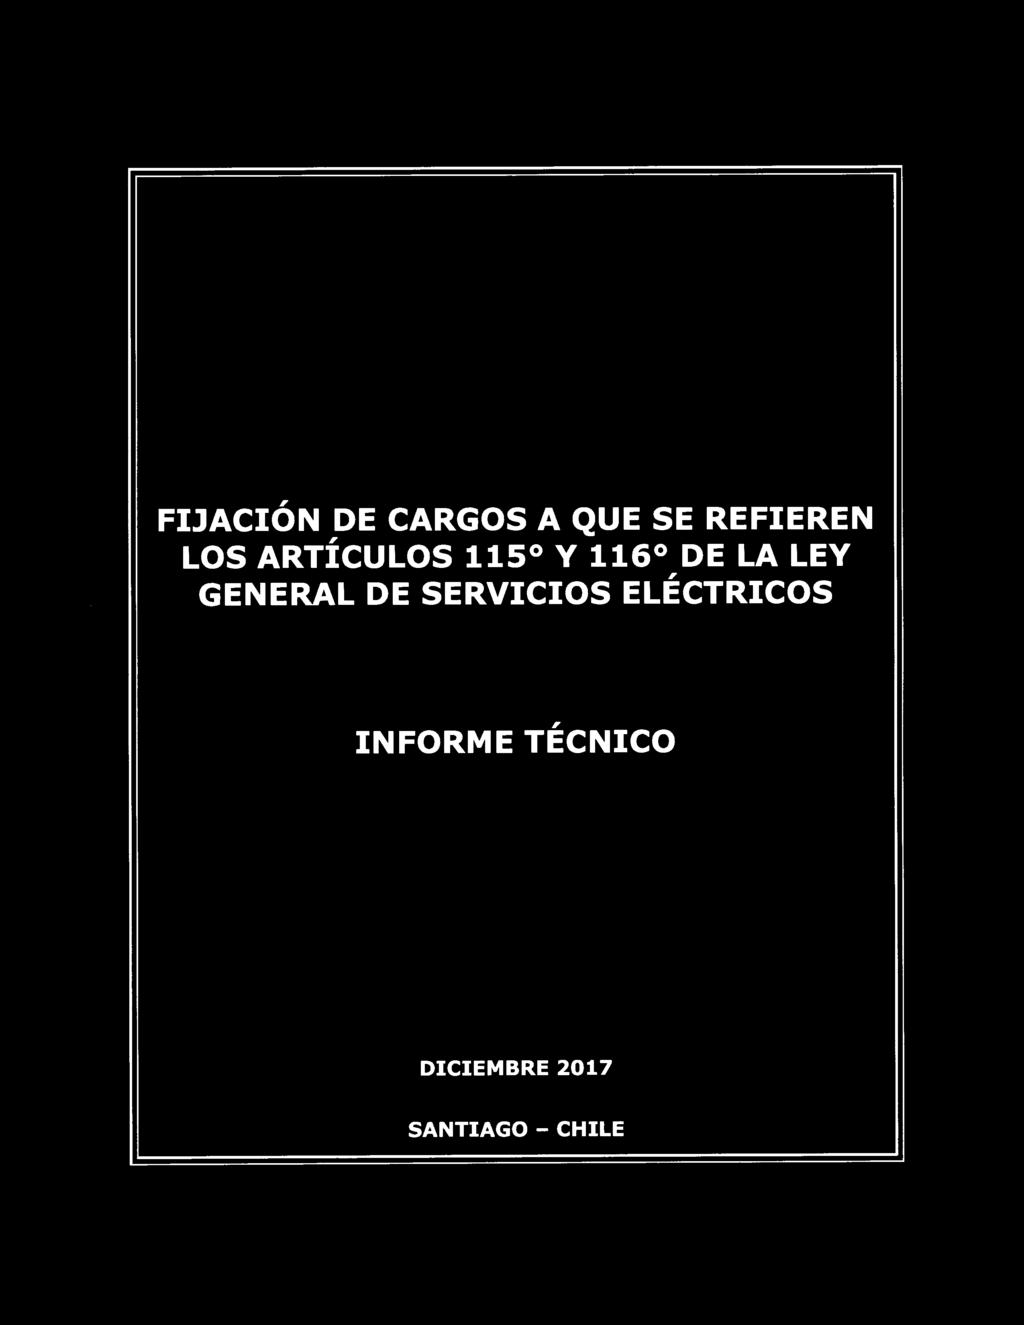 Ministerio de Energía FIJACIÓN DE CARGOS A QUE SE REFIEREN, LOS ARTICULOS 115 Y 116 DE